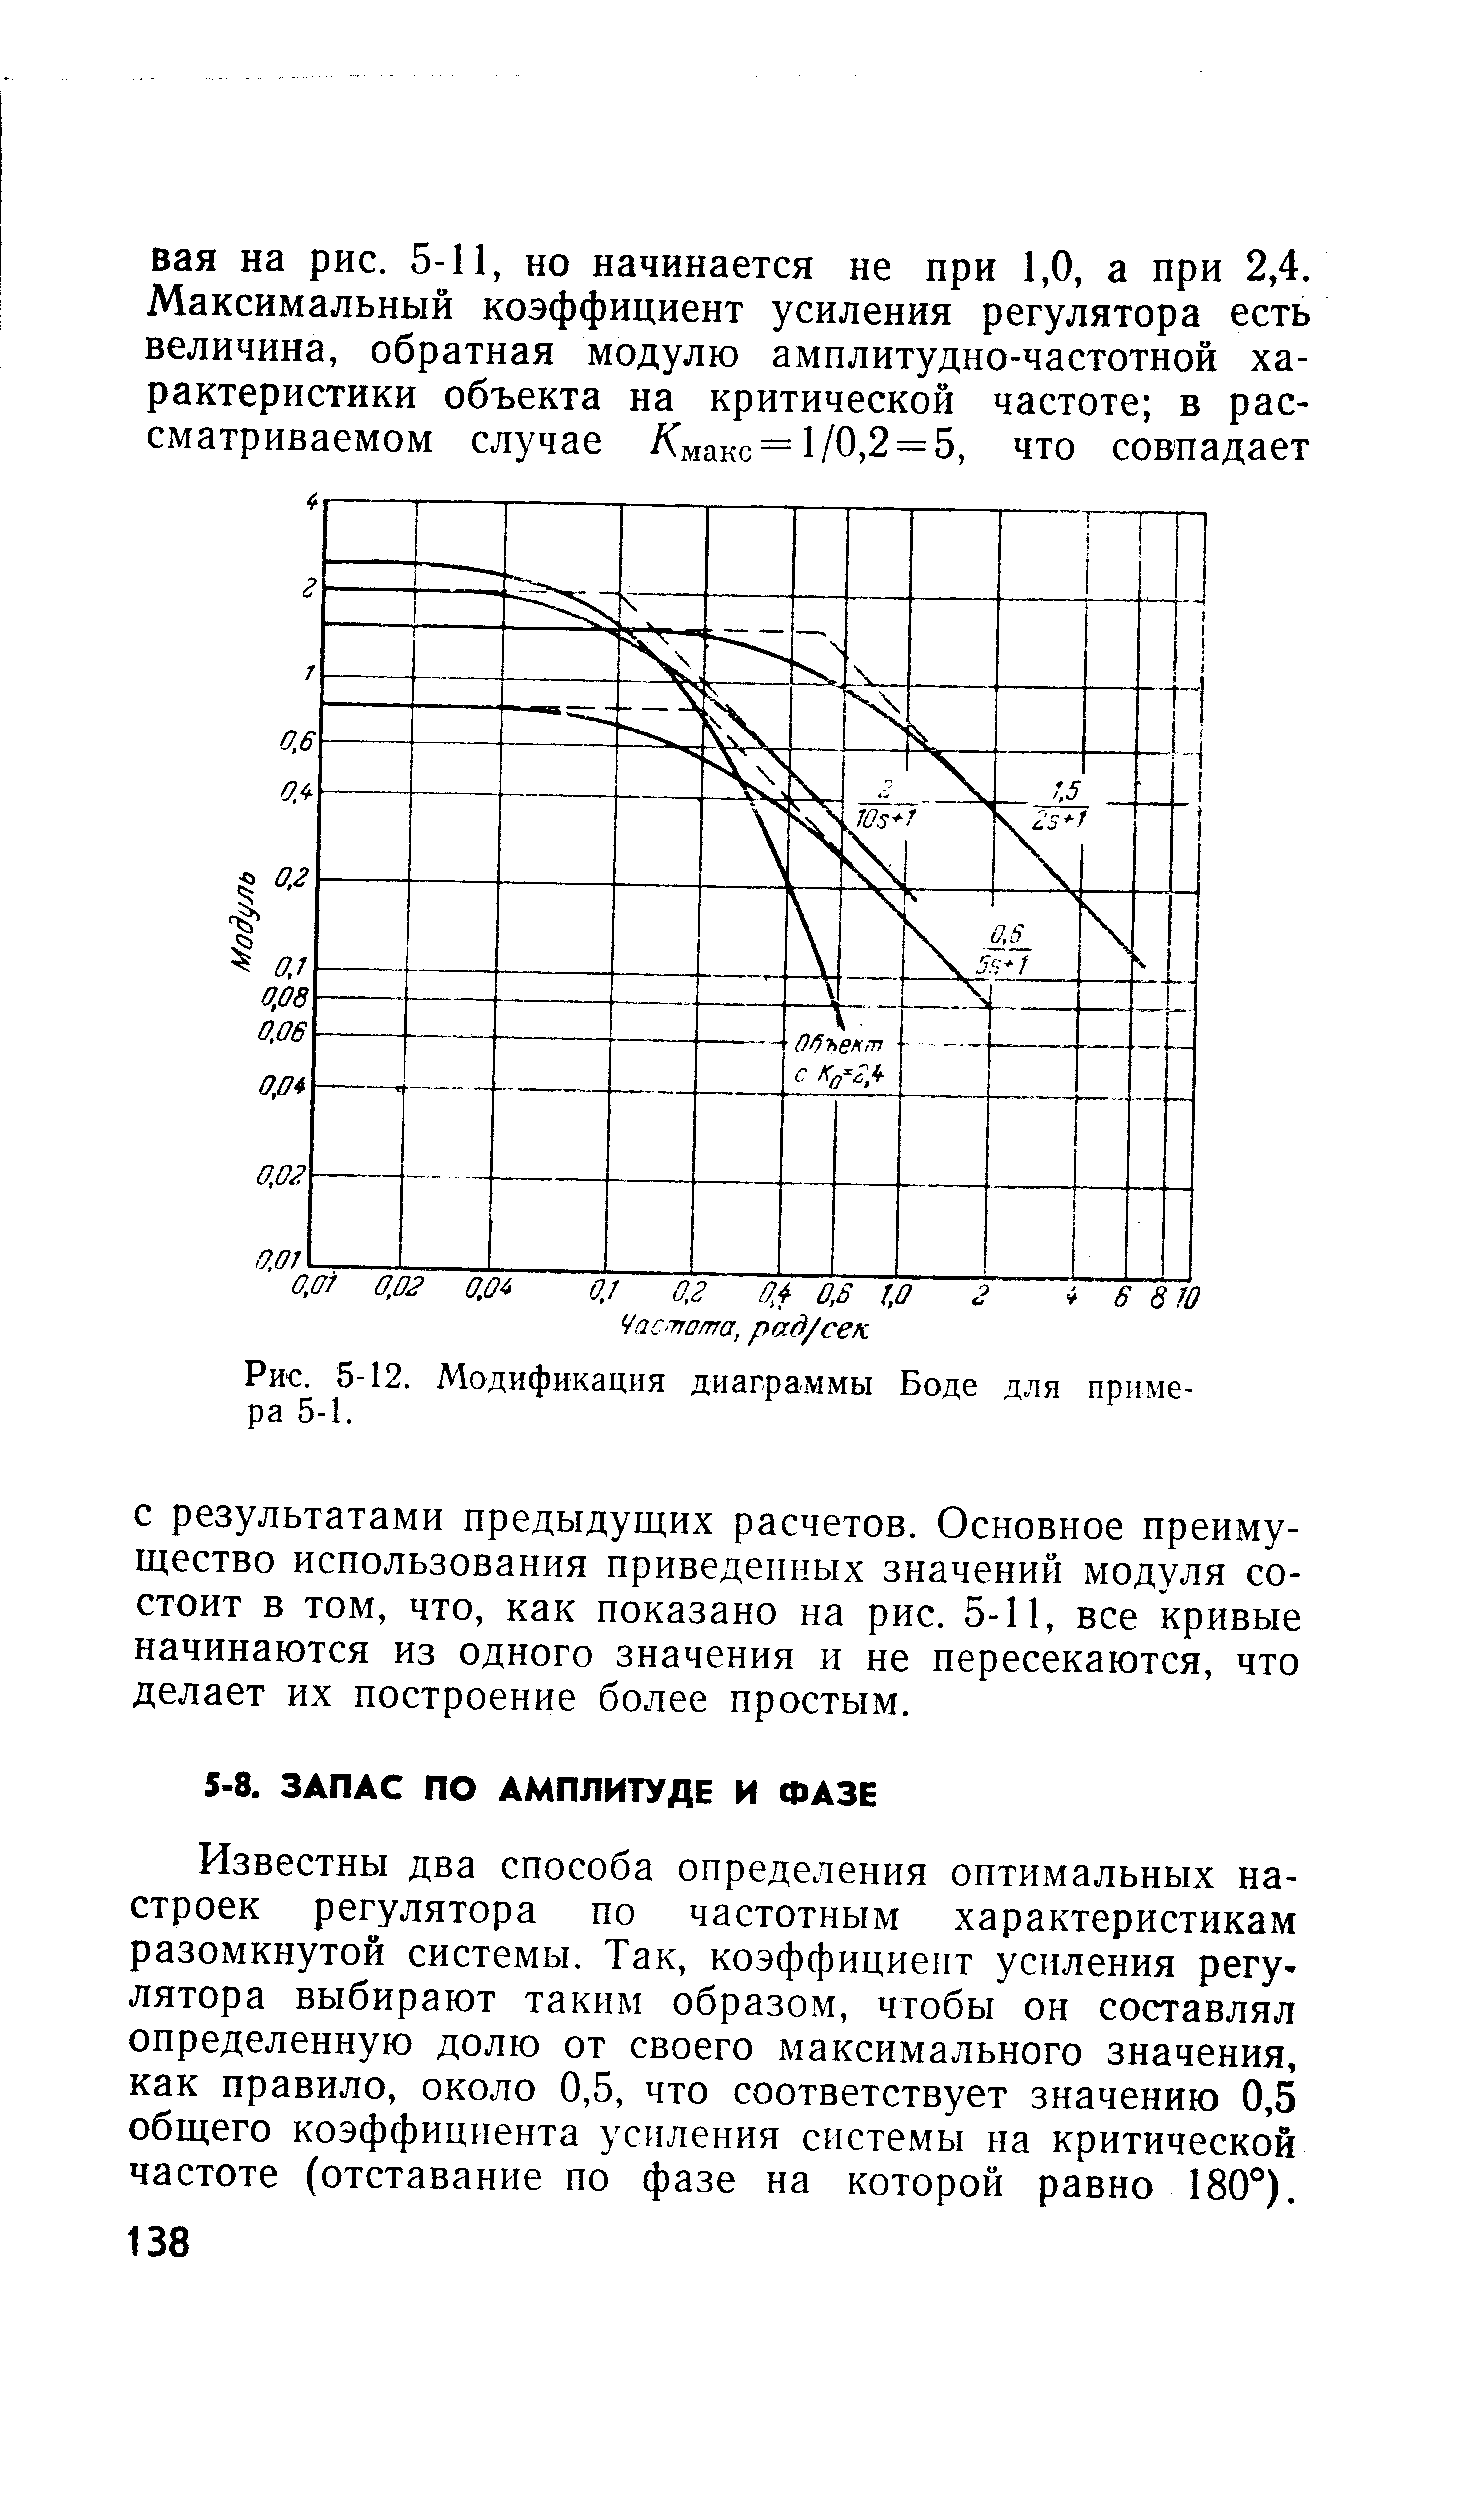 Рис. 5-12. Модификация диаграммы Боде для примера 5-1.
